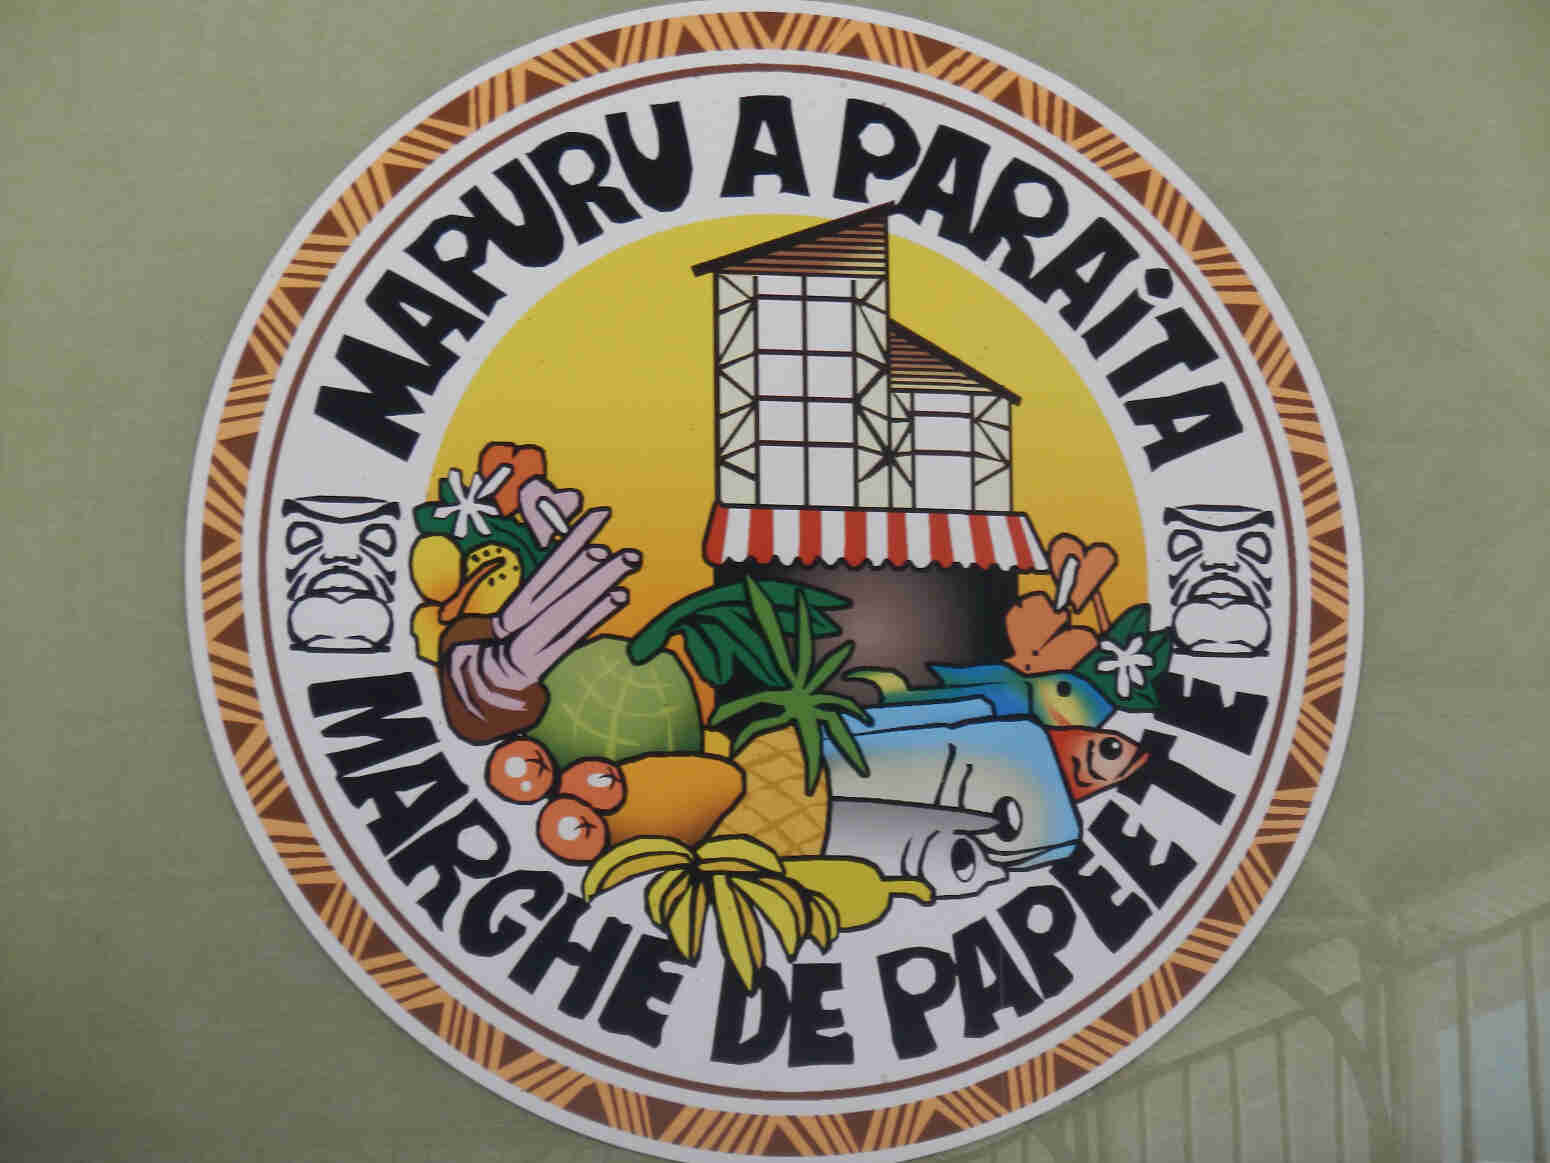 Marche de Papeete